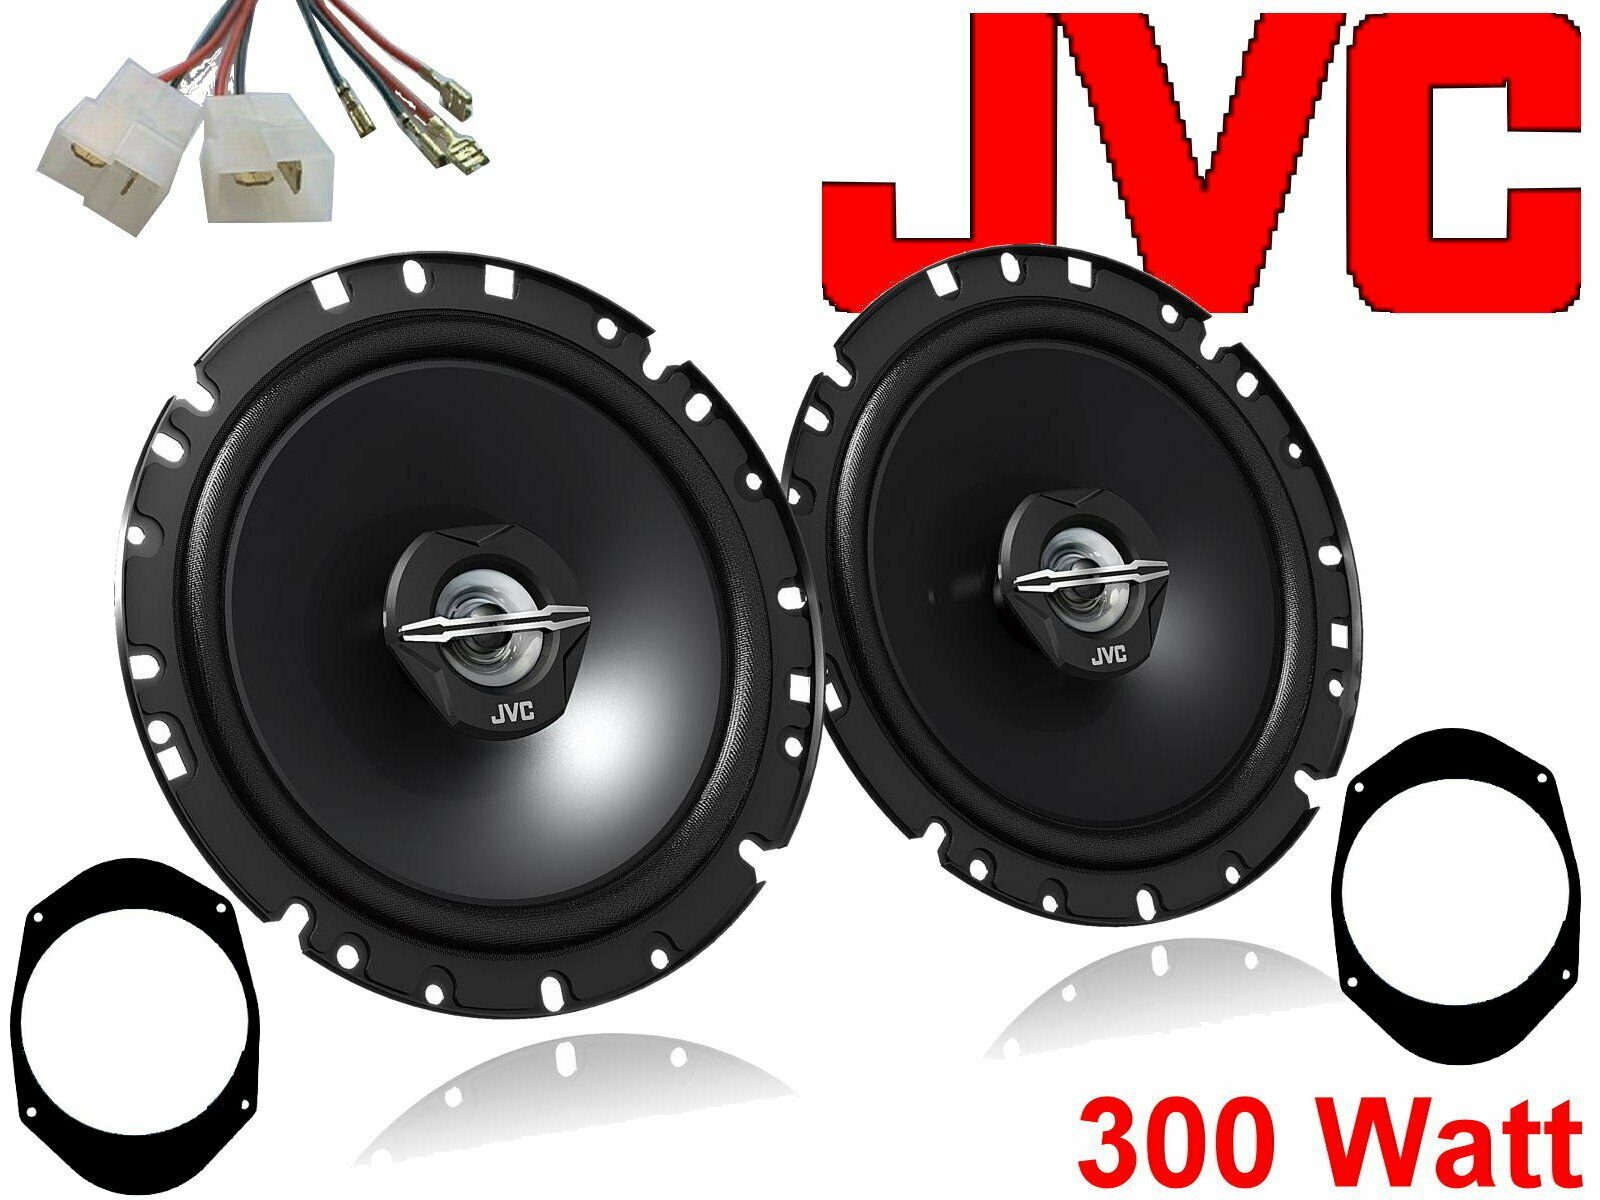 DSX JVC 300 W passend für Ford Puma 97 - 01 Lautsprech Auto-Lautsprecher (30 W) | Auto-Lautsprecher